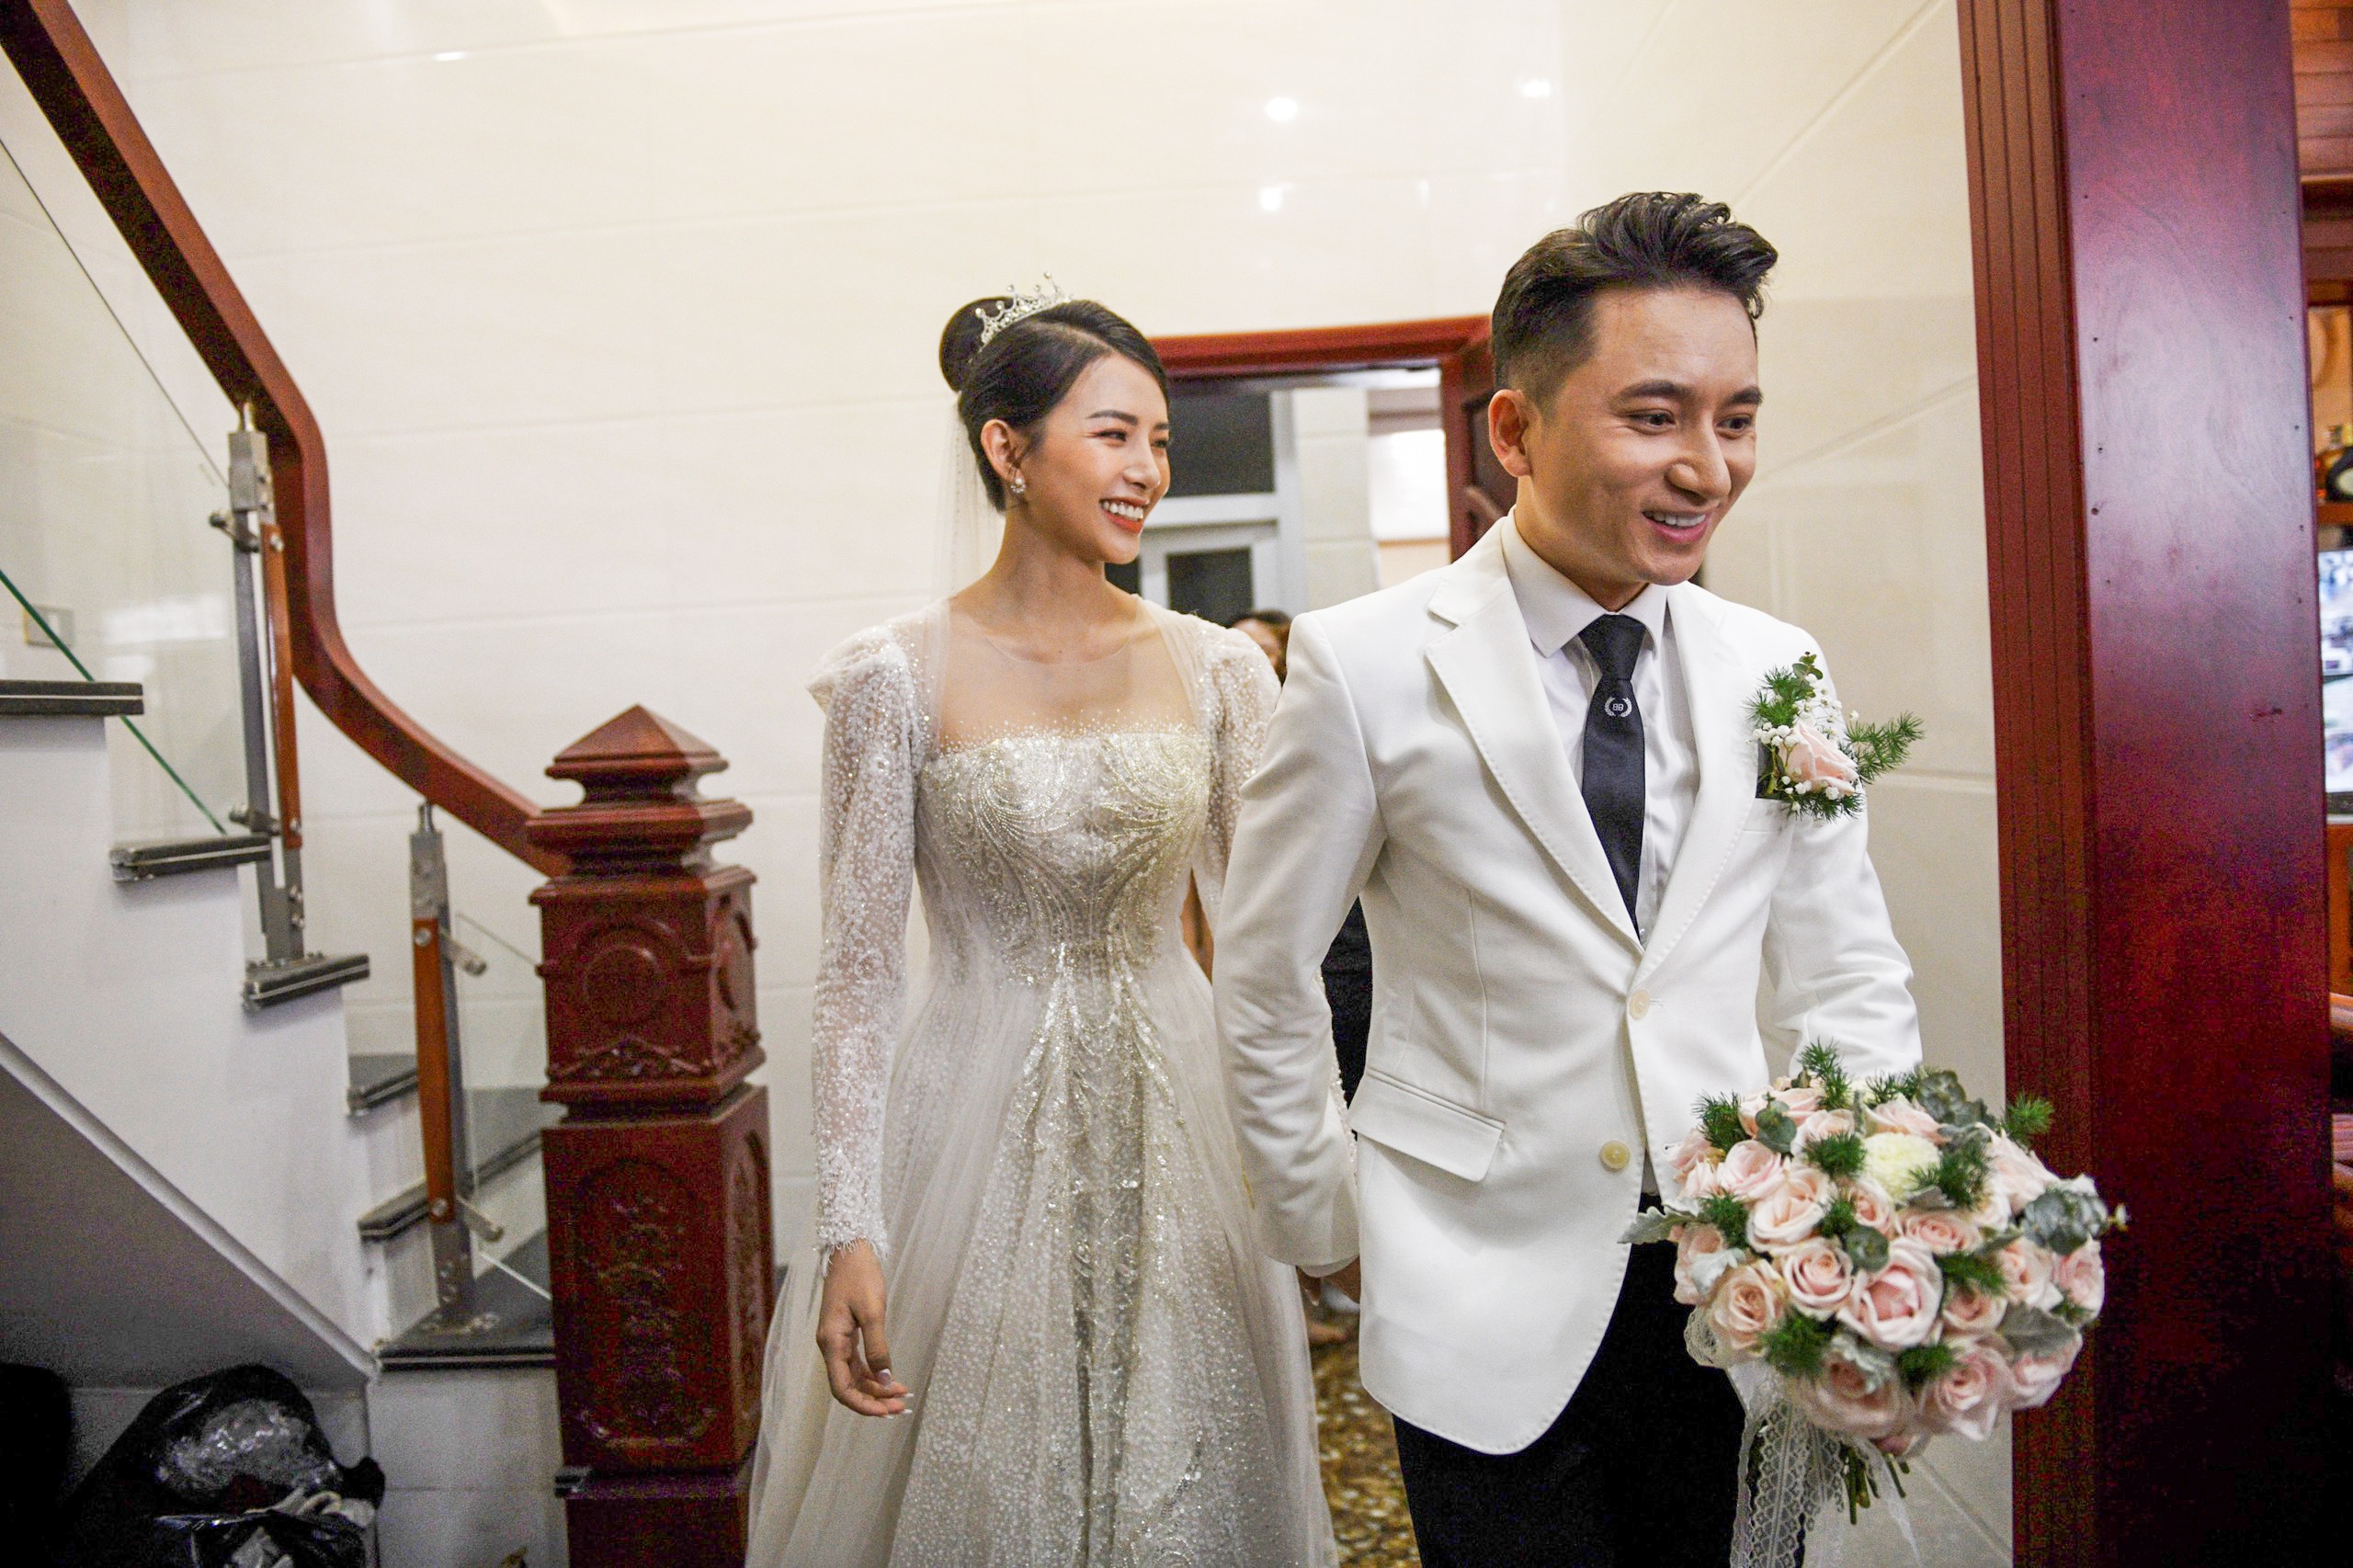 Nhan sắc rạng rỡ của cô dâu Quỳnh Anh khi về nhà chồng